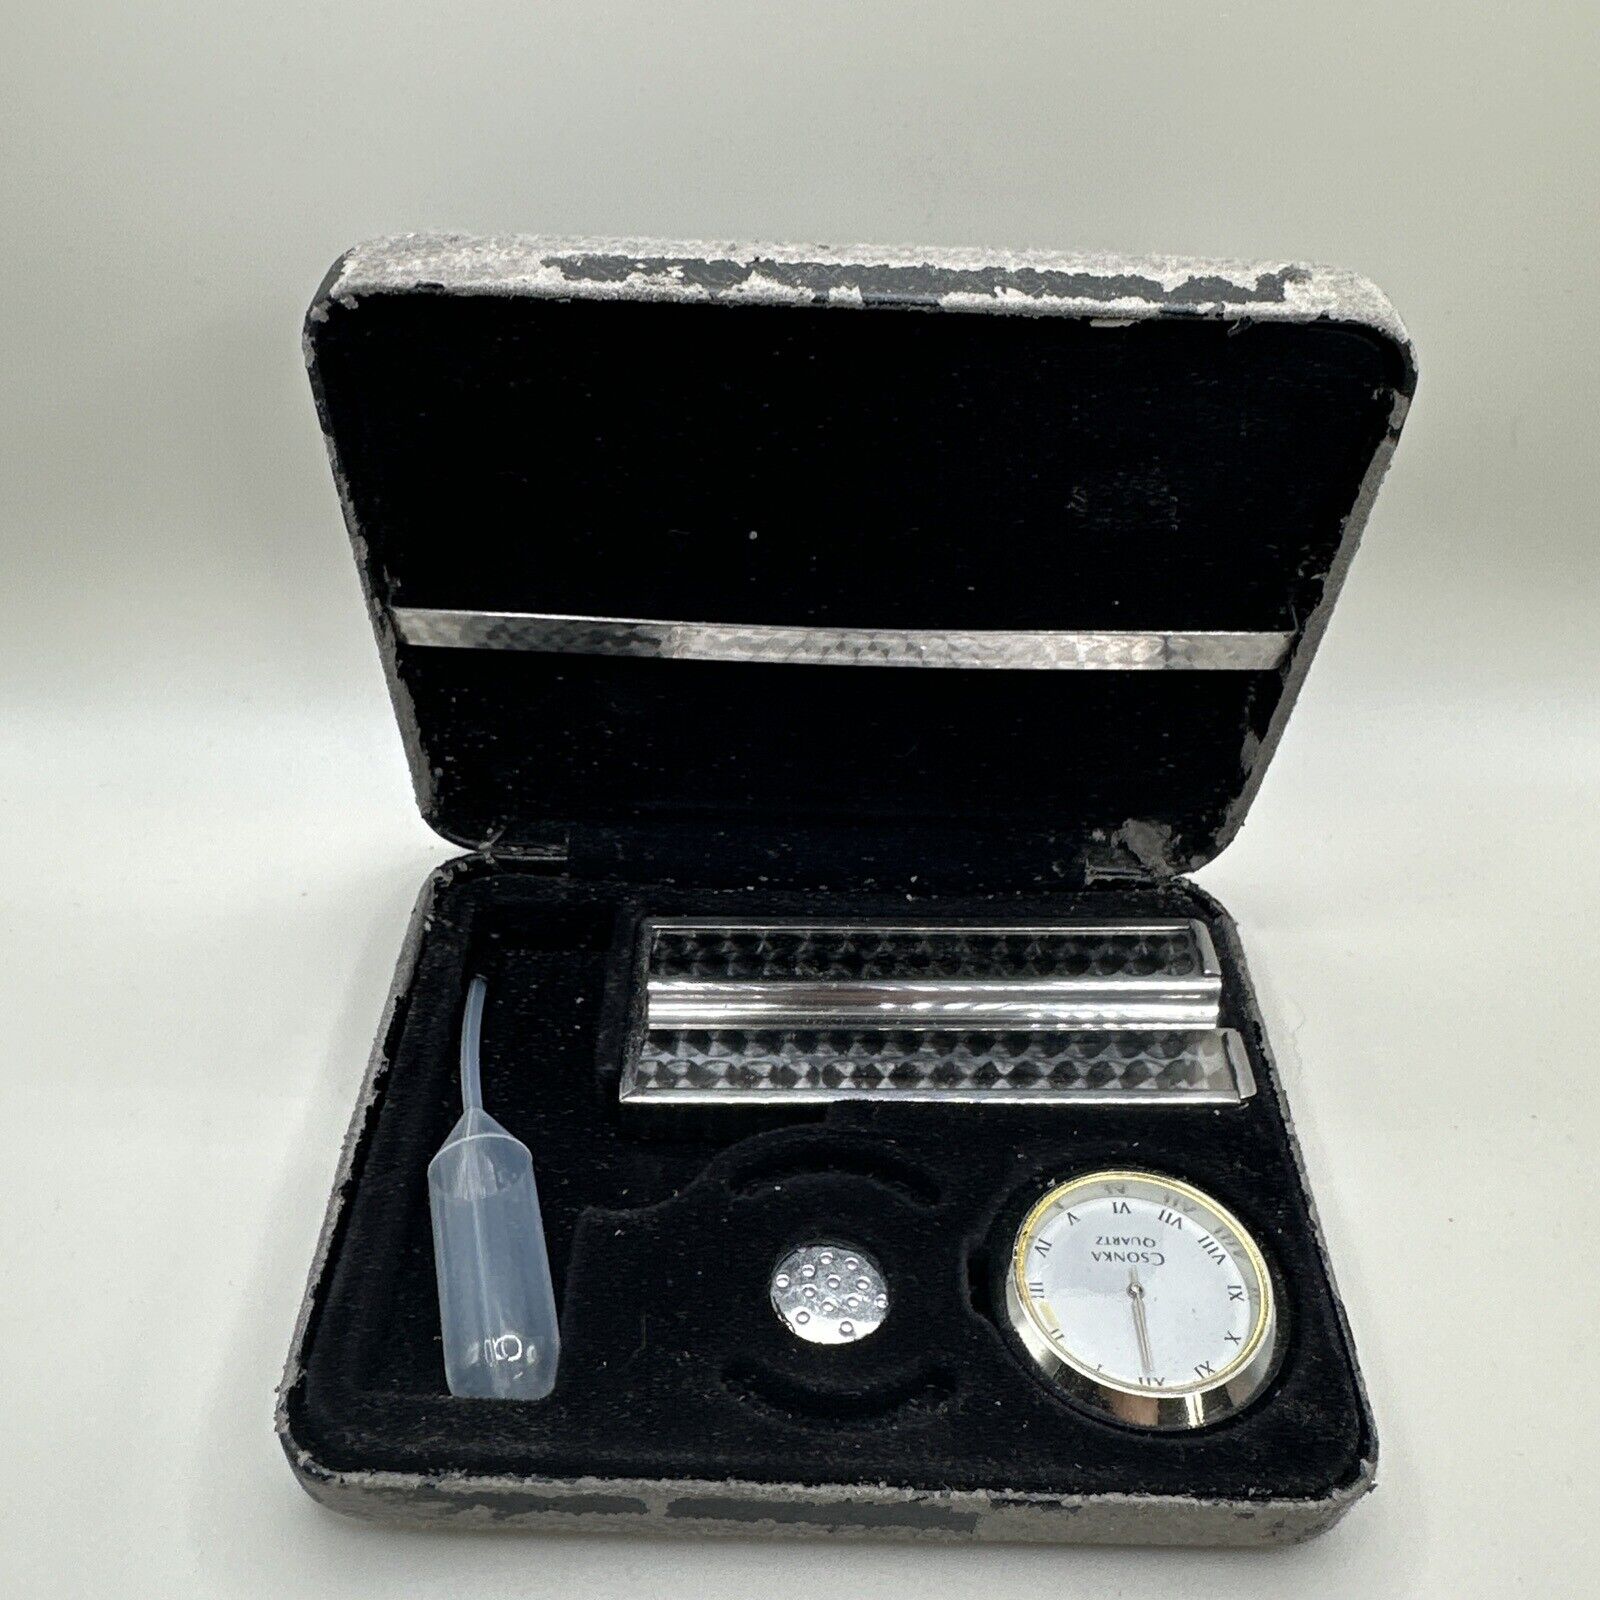 Vintage Csonka Smokit 15 Count Travel Cigarillo Case Ashtray Humidor Clock